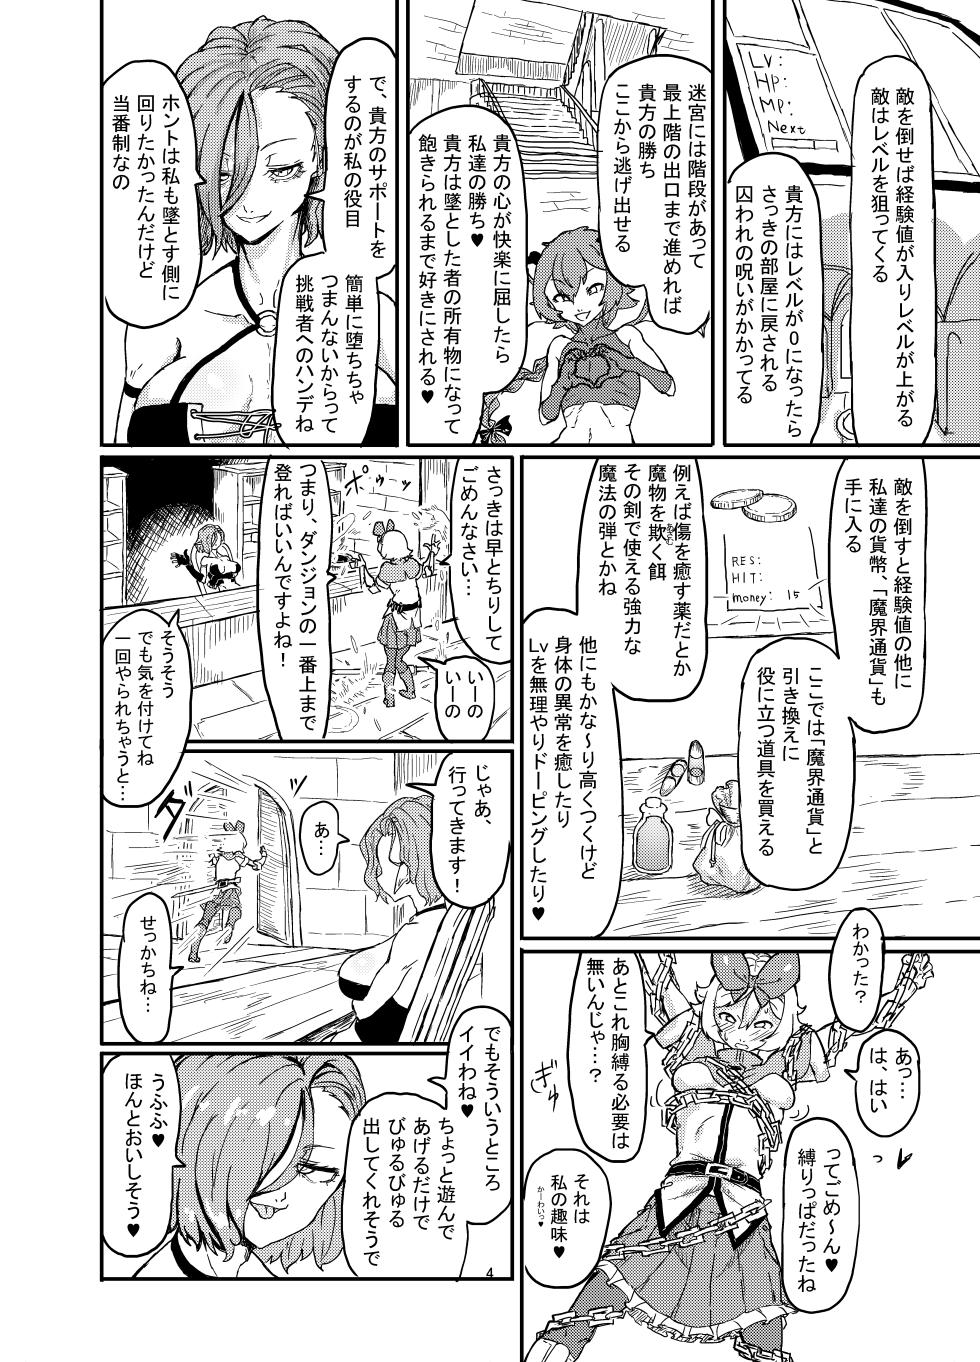 Shirokarasuya 2 - Page 5